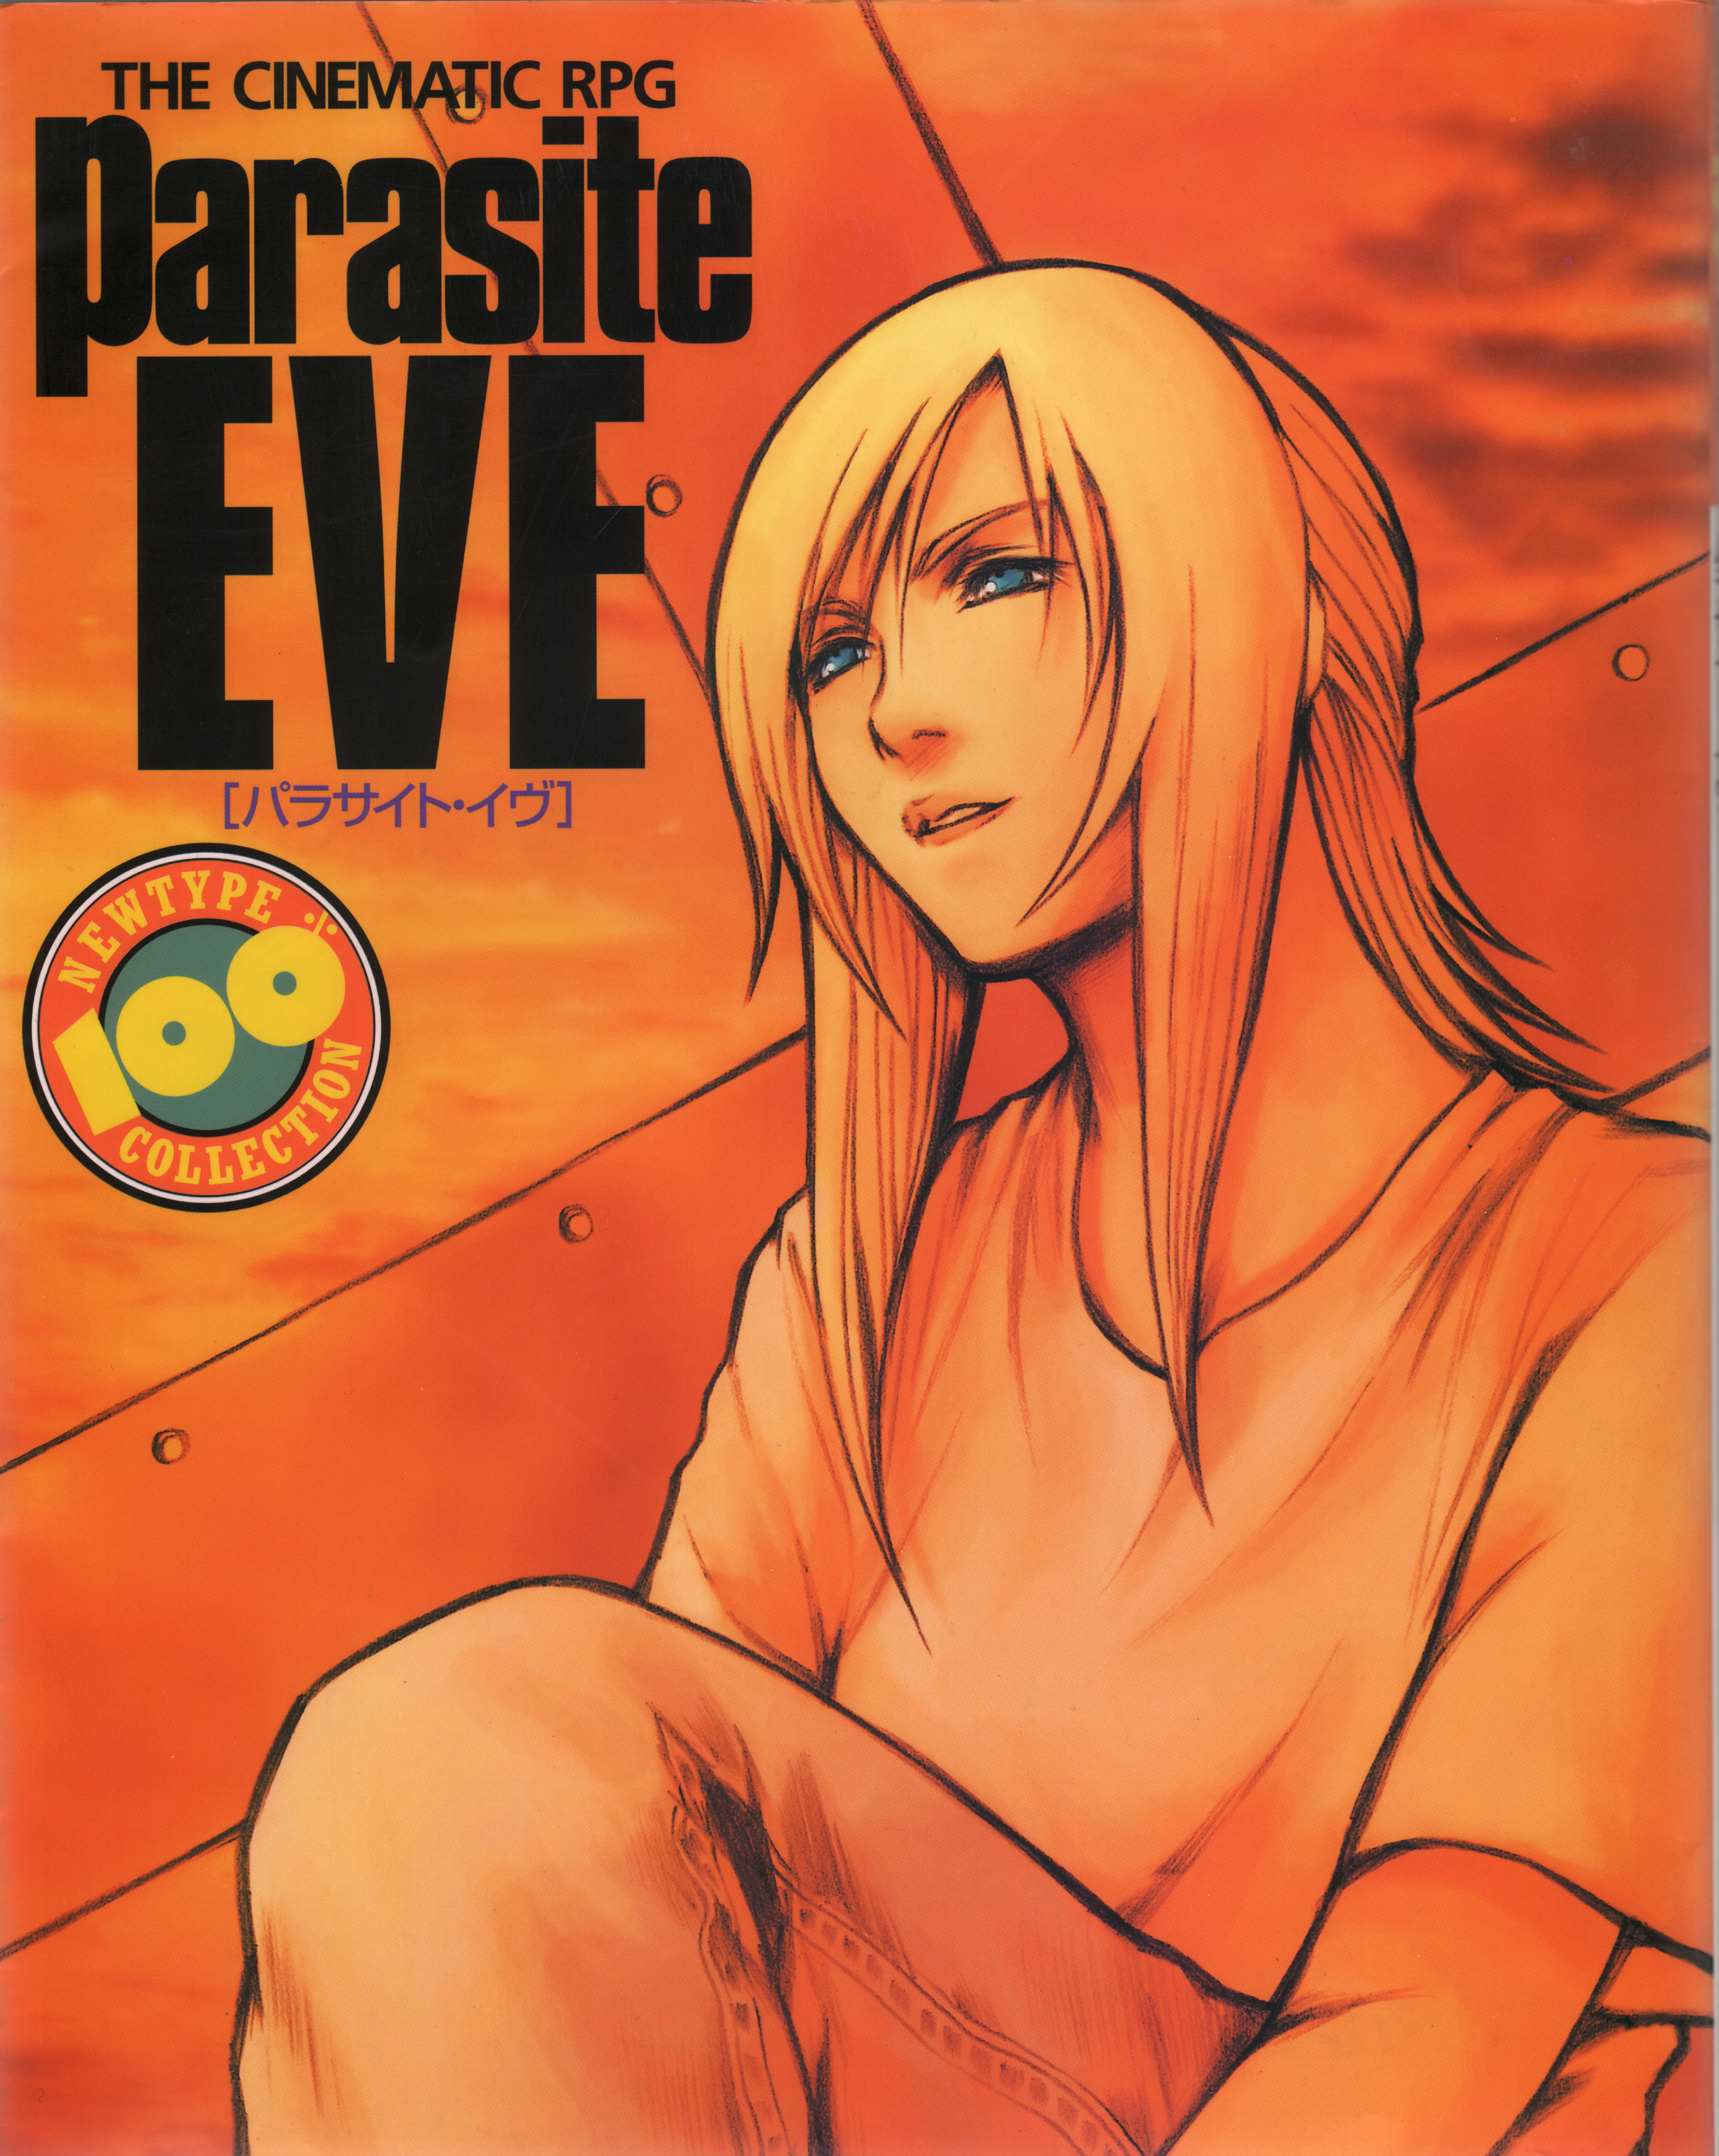 Parasite Eve II - IGN